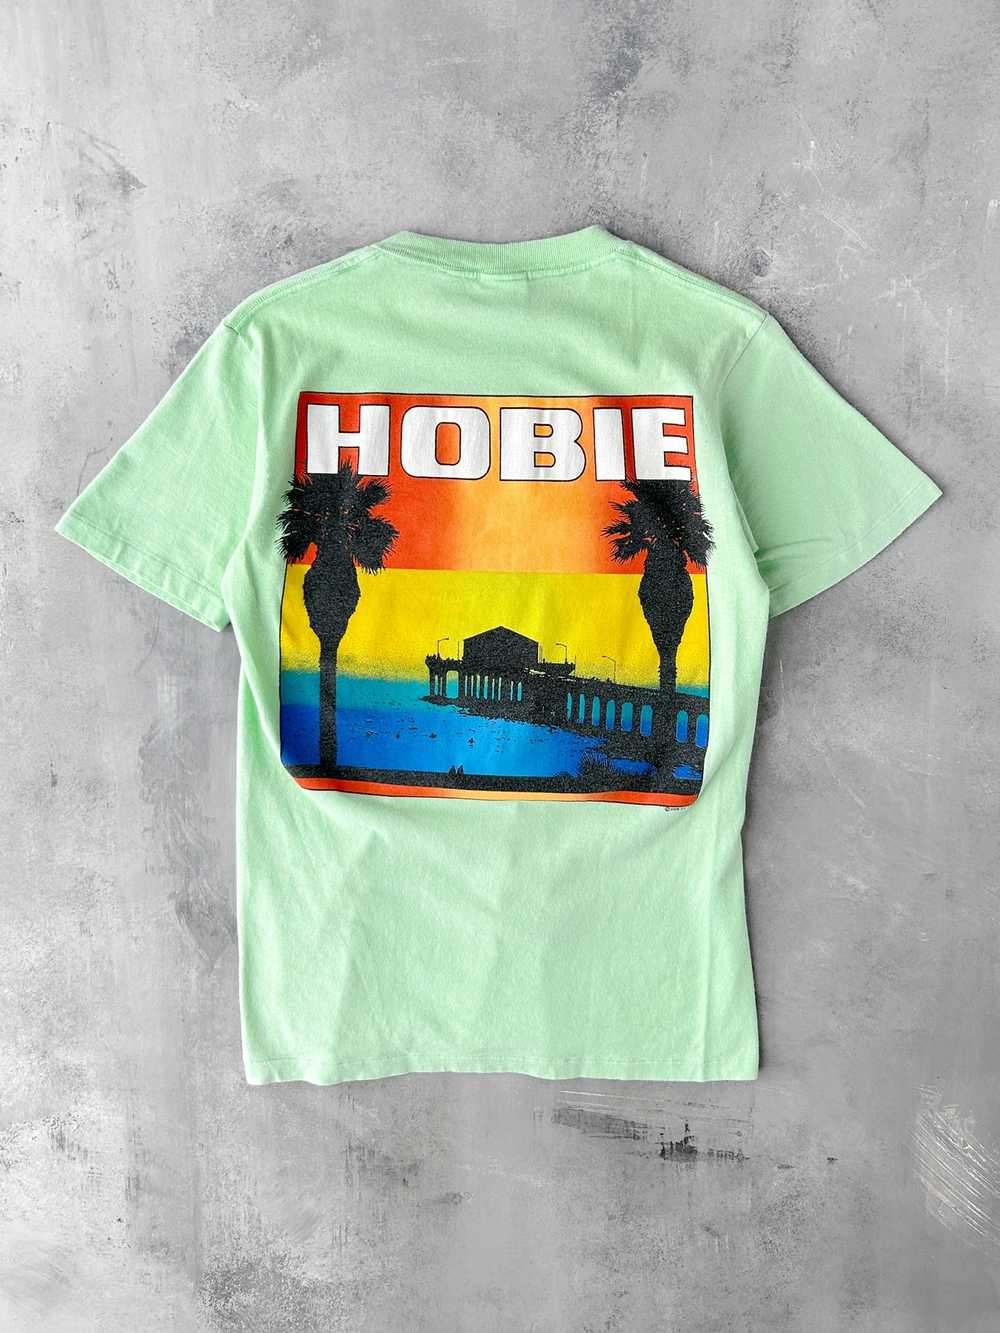 Hobie T-Shirt '88 - Small - image 1